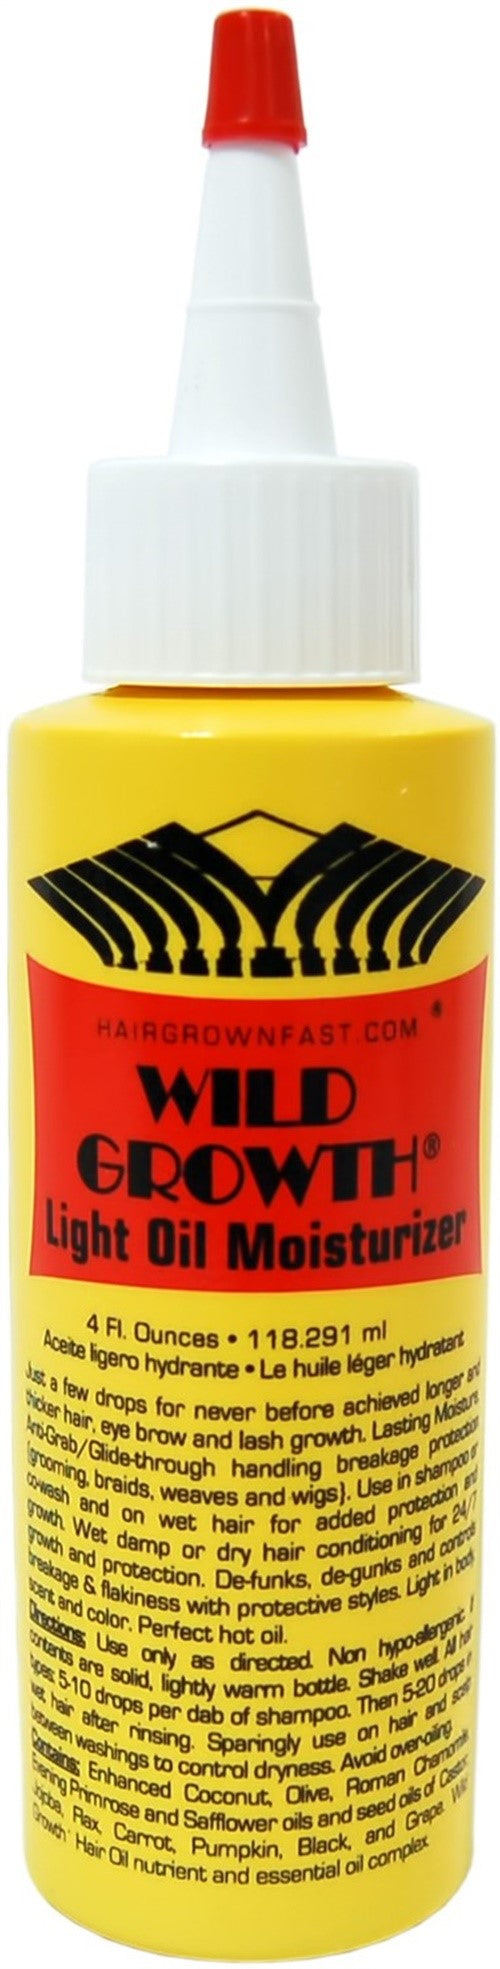 Wild Growth Light Oil